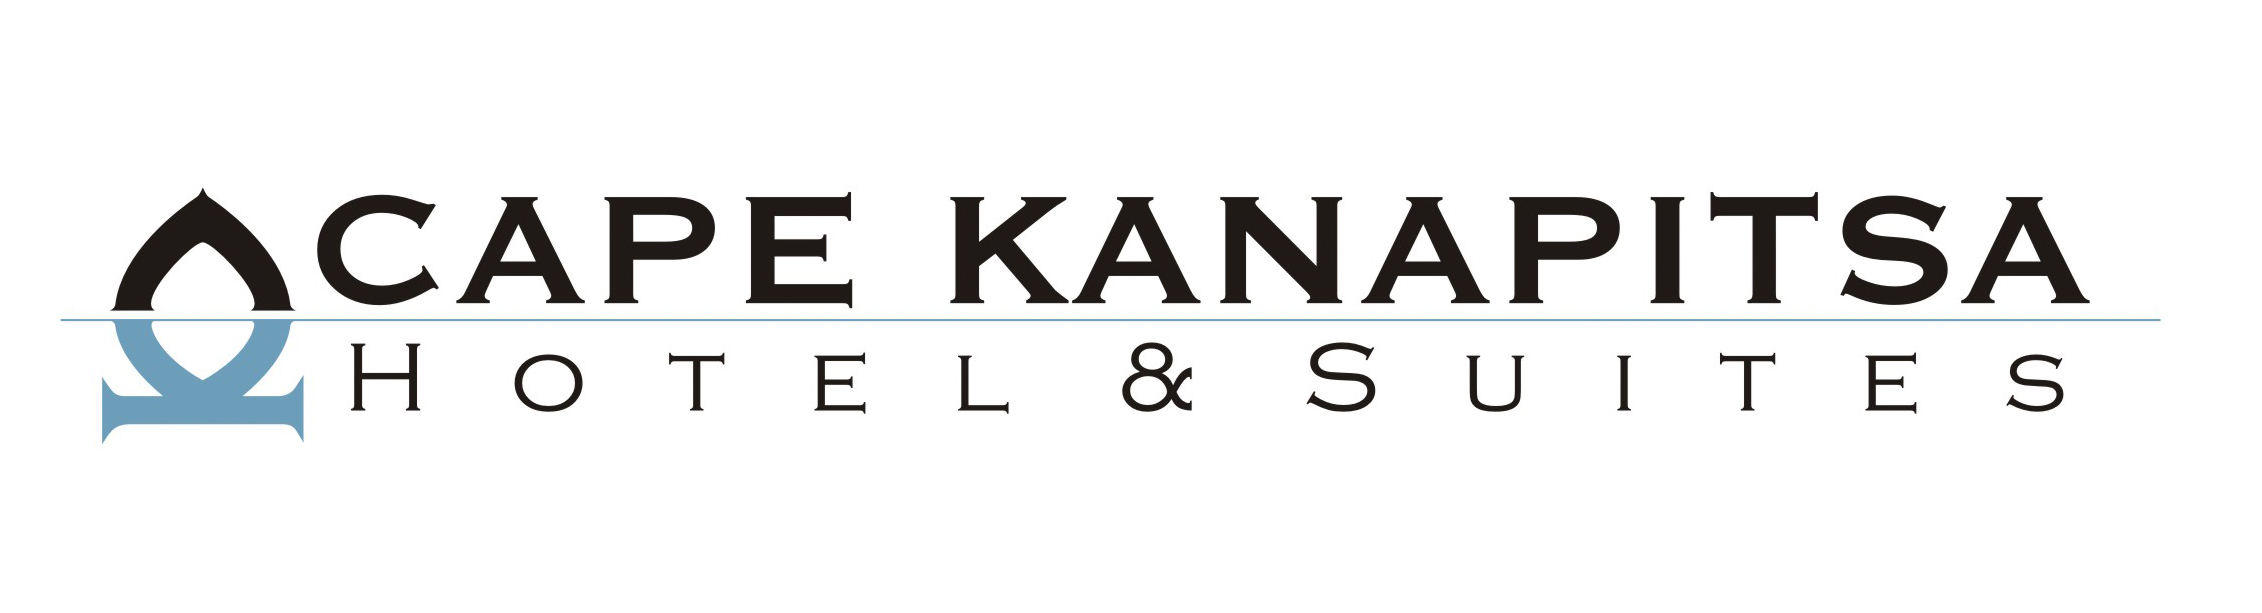 Cape Kanapitsa logo